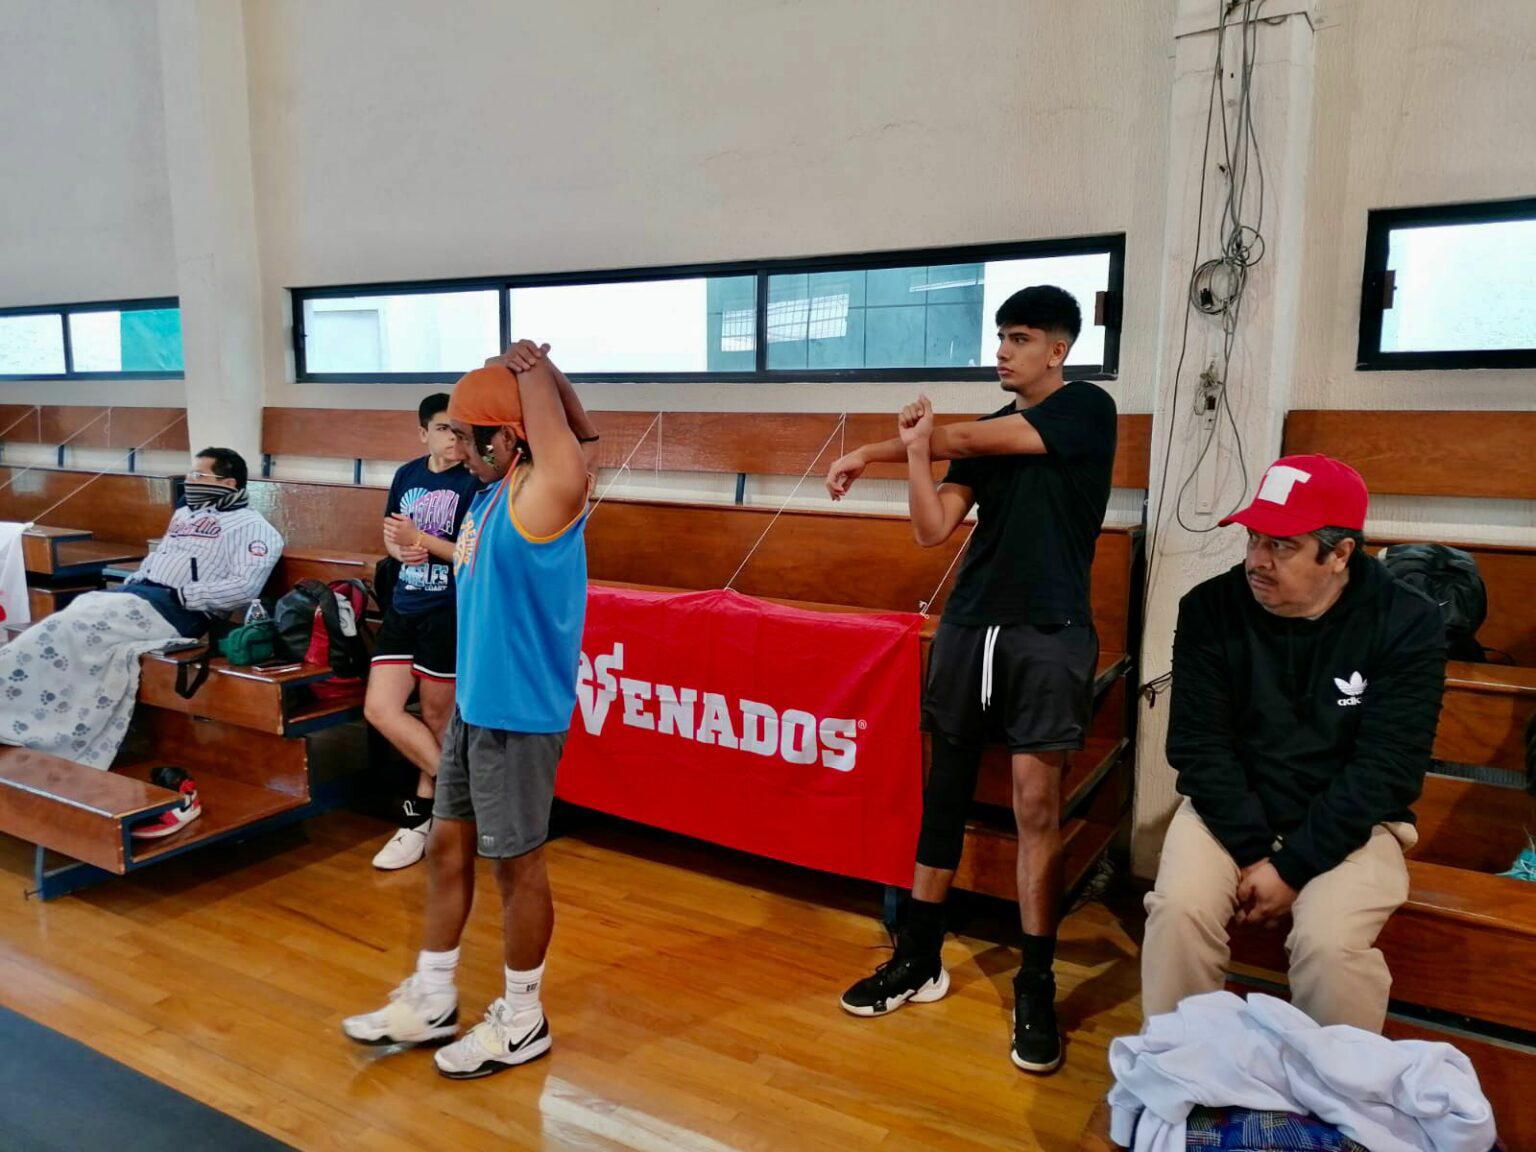 $!Venados Basketball realiza Try Out en la Ciudad de México